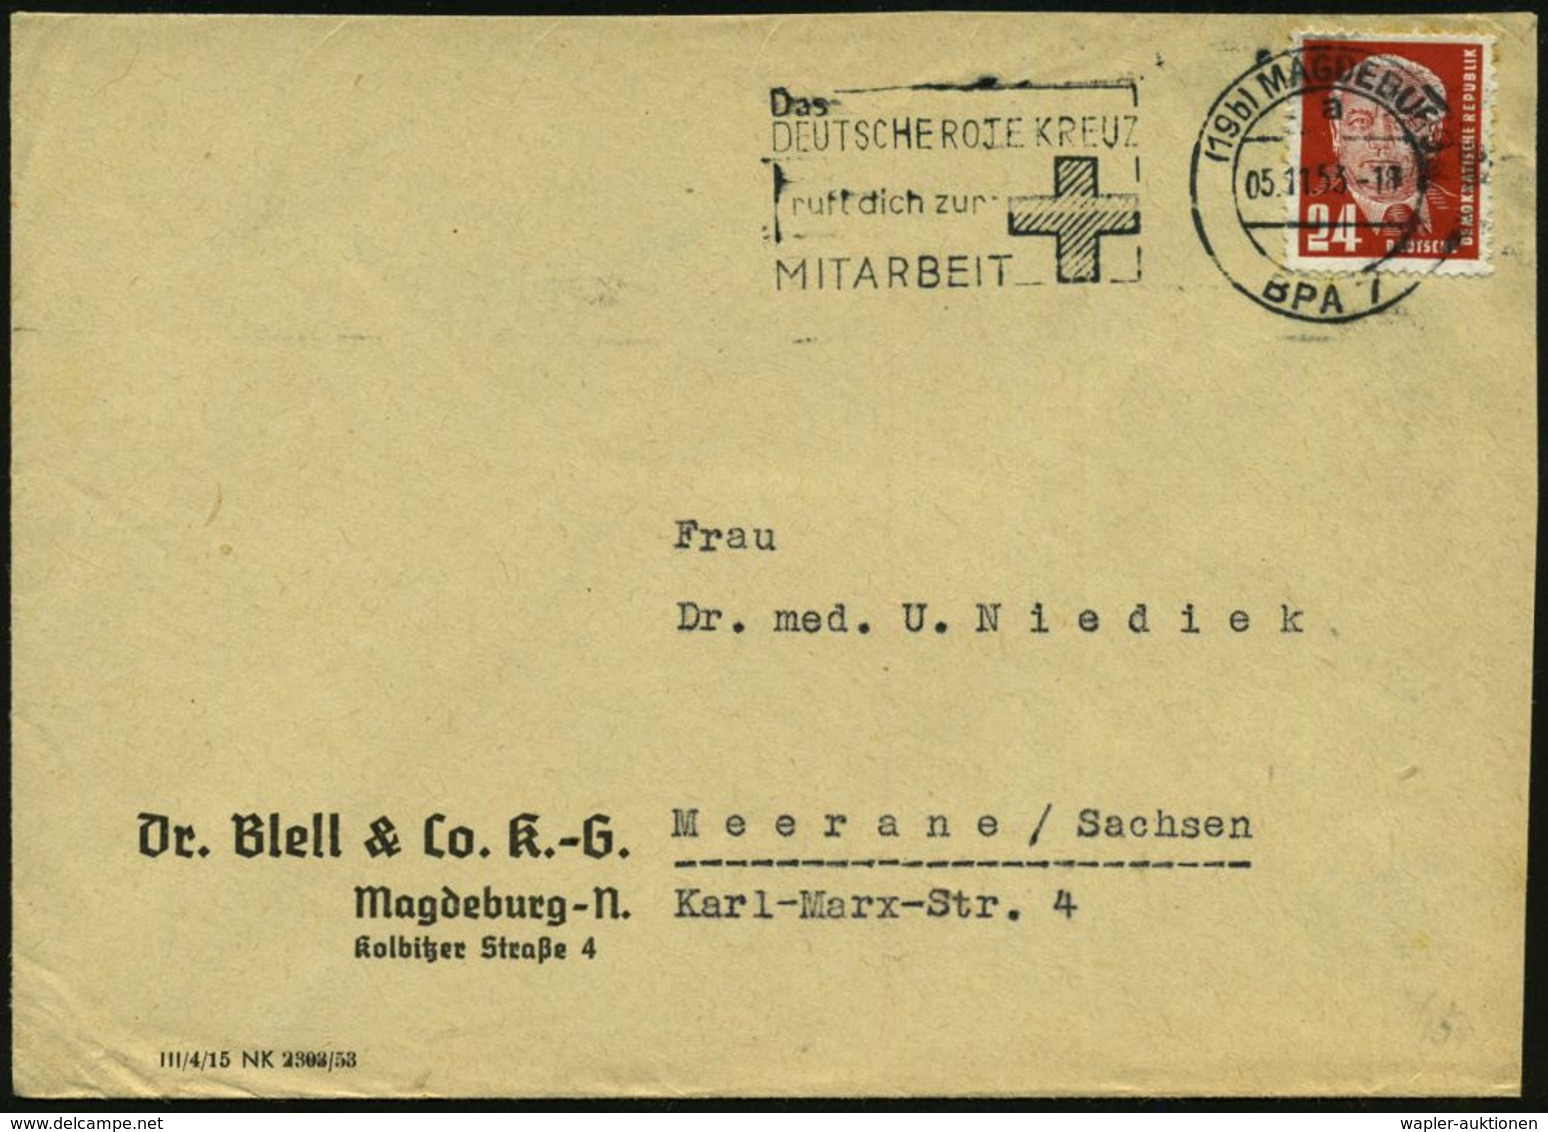 (19b) MAGDEBURG / A/ BPA 7/ Das/ DEUTSCHE ROTE KREUZ/ Ruft.. 1953 (5.11.) MWSt (Kreuz) Firmenbf. (Bo.S 651 A , Nur 3 Mon - Rotes Kreuz